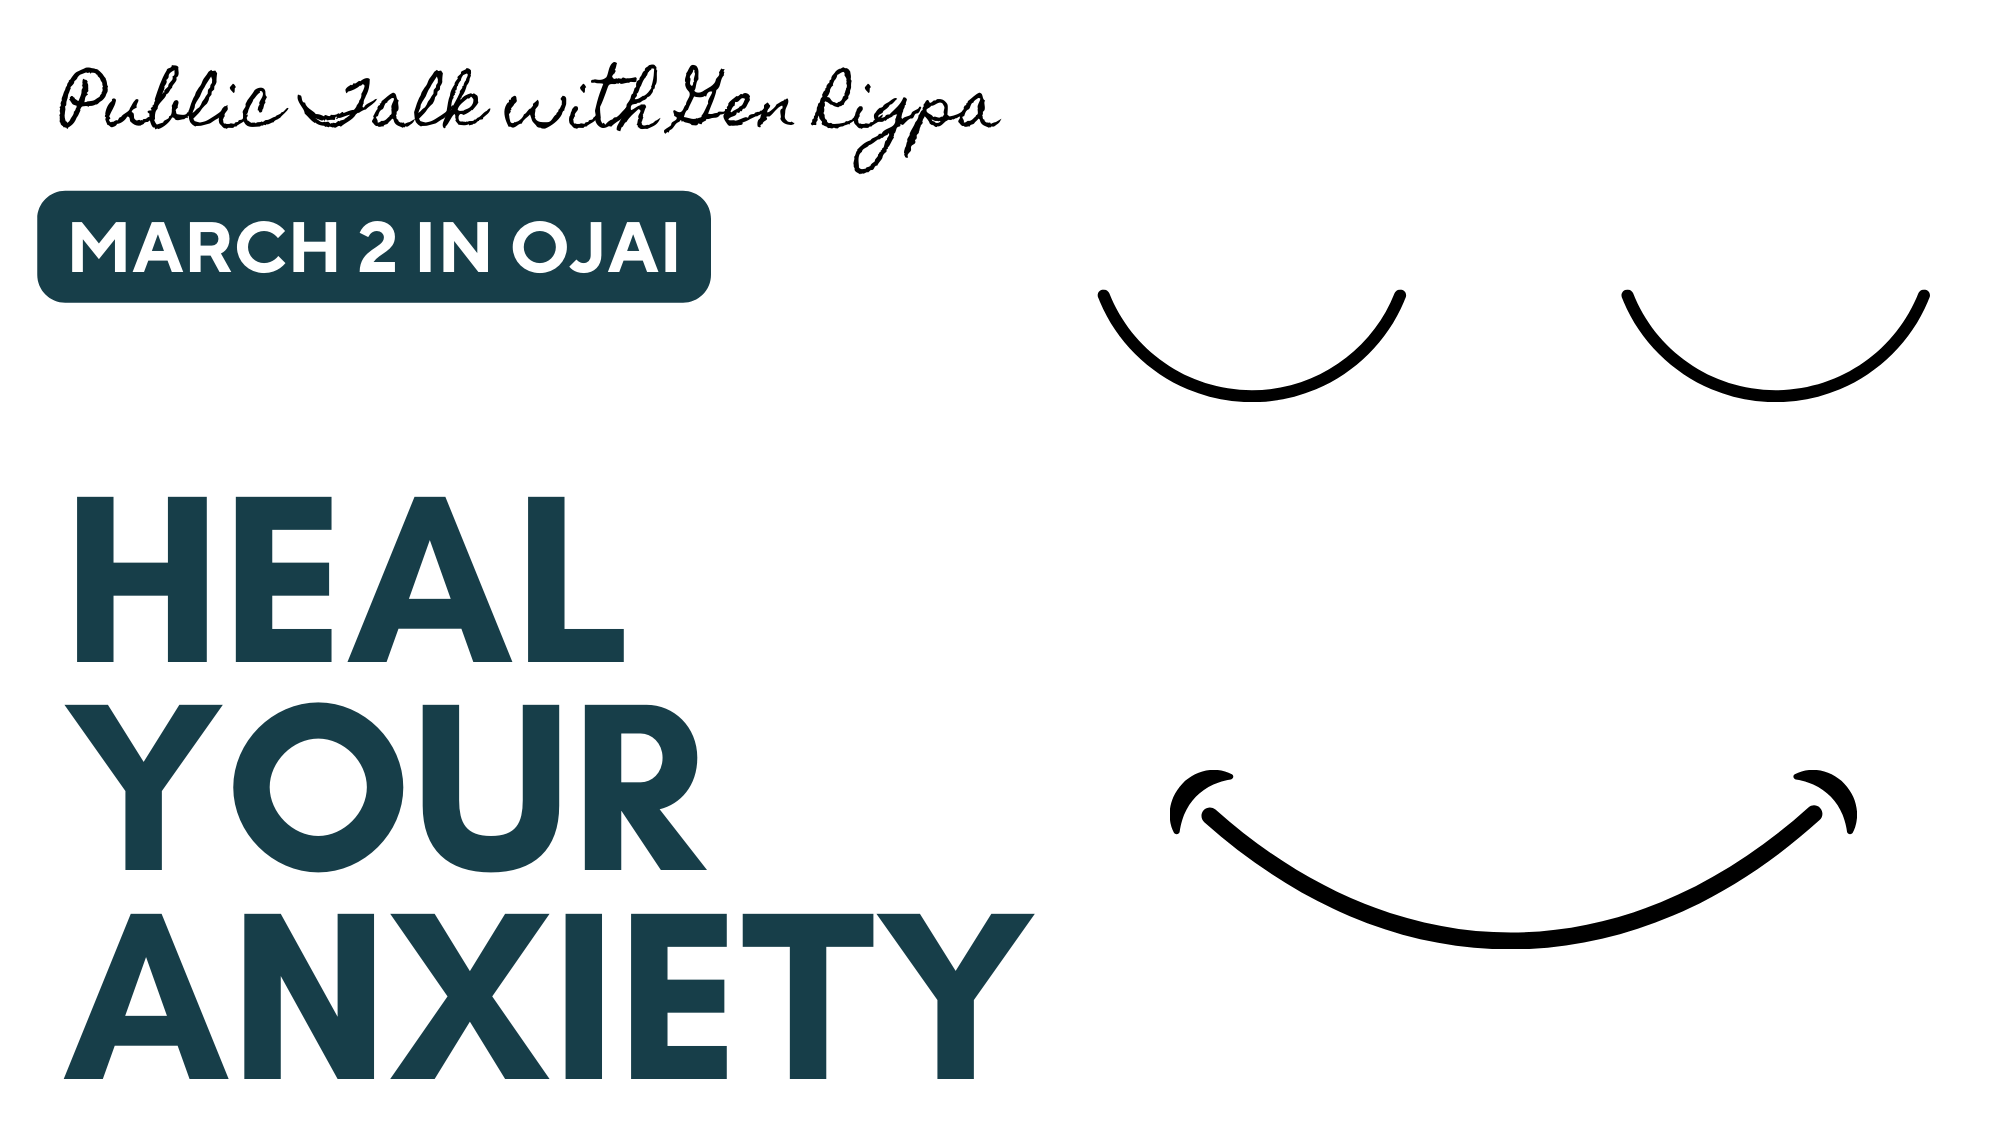 Ojai Public Talk - Heal Your Anxiety